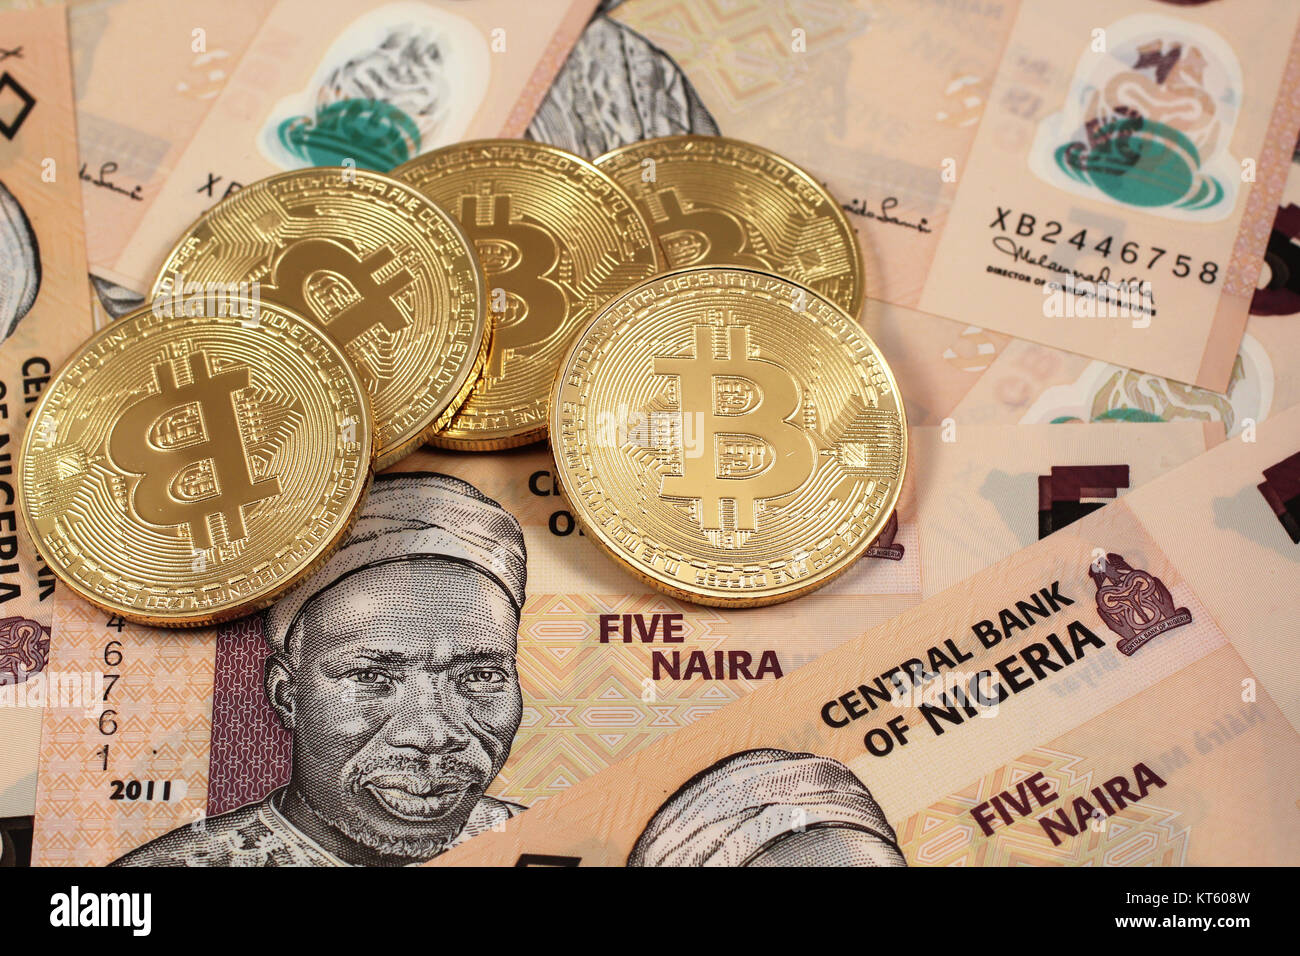 0.0076 bitcoin to naira